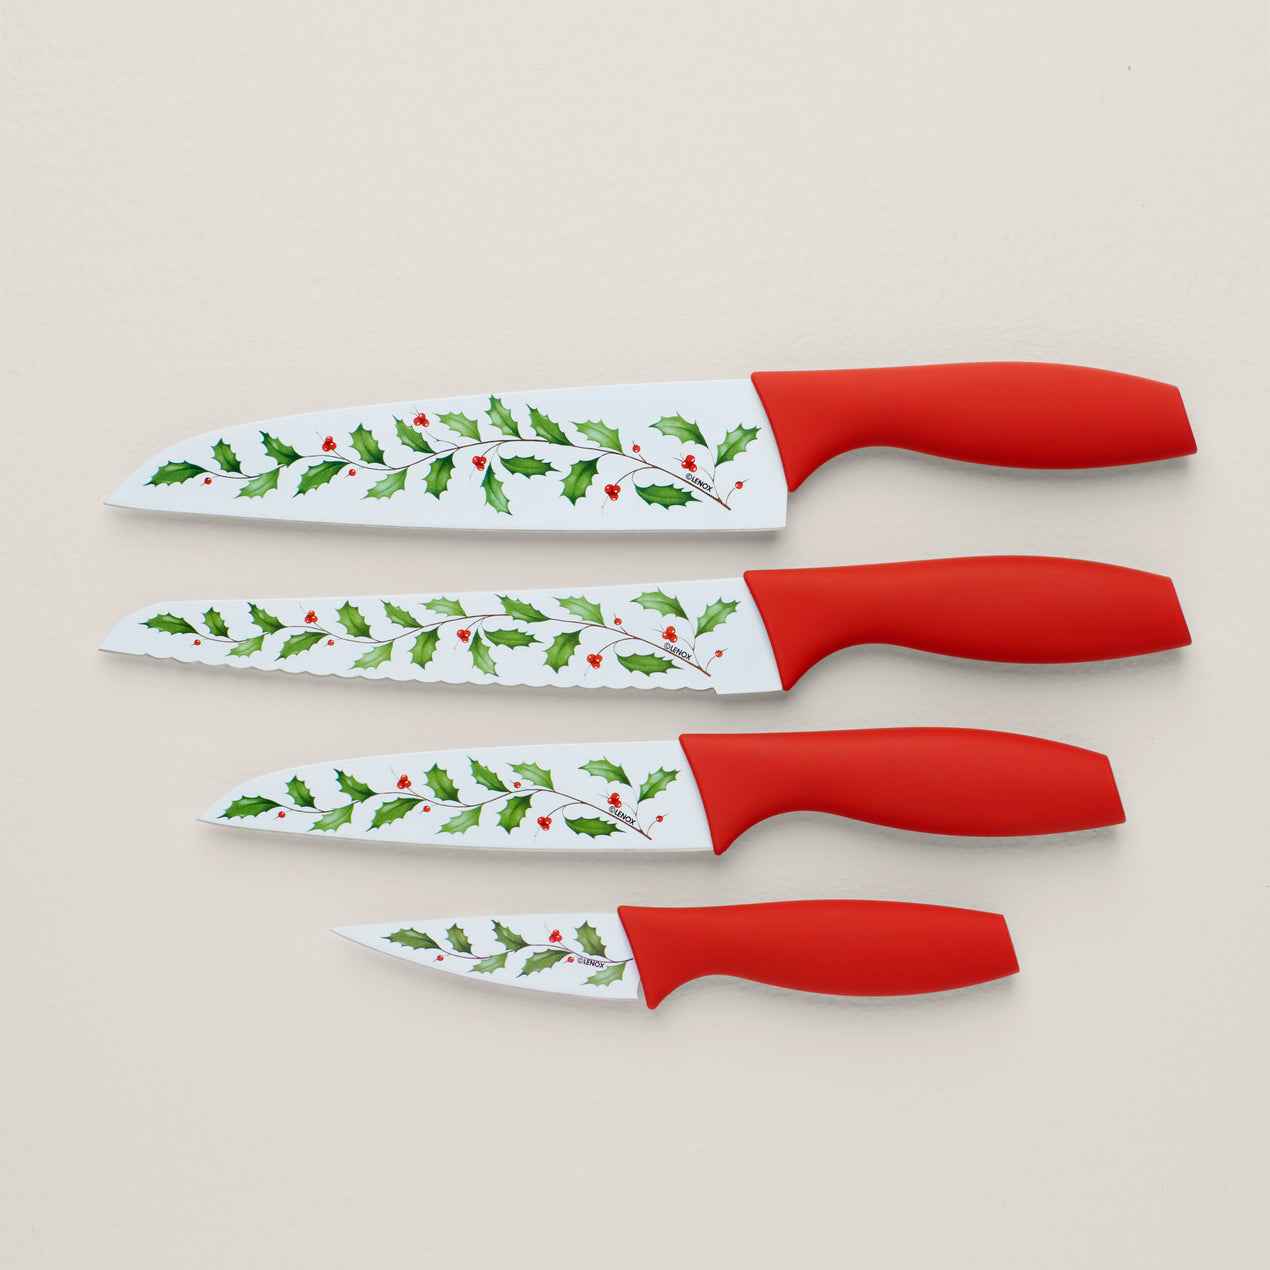 Lenox 895034 Holiday Printed Knives, Set of 4